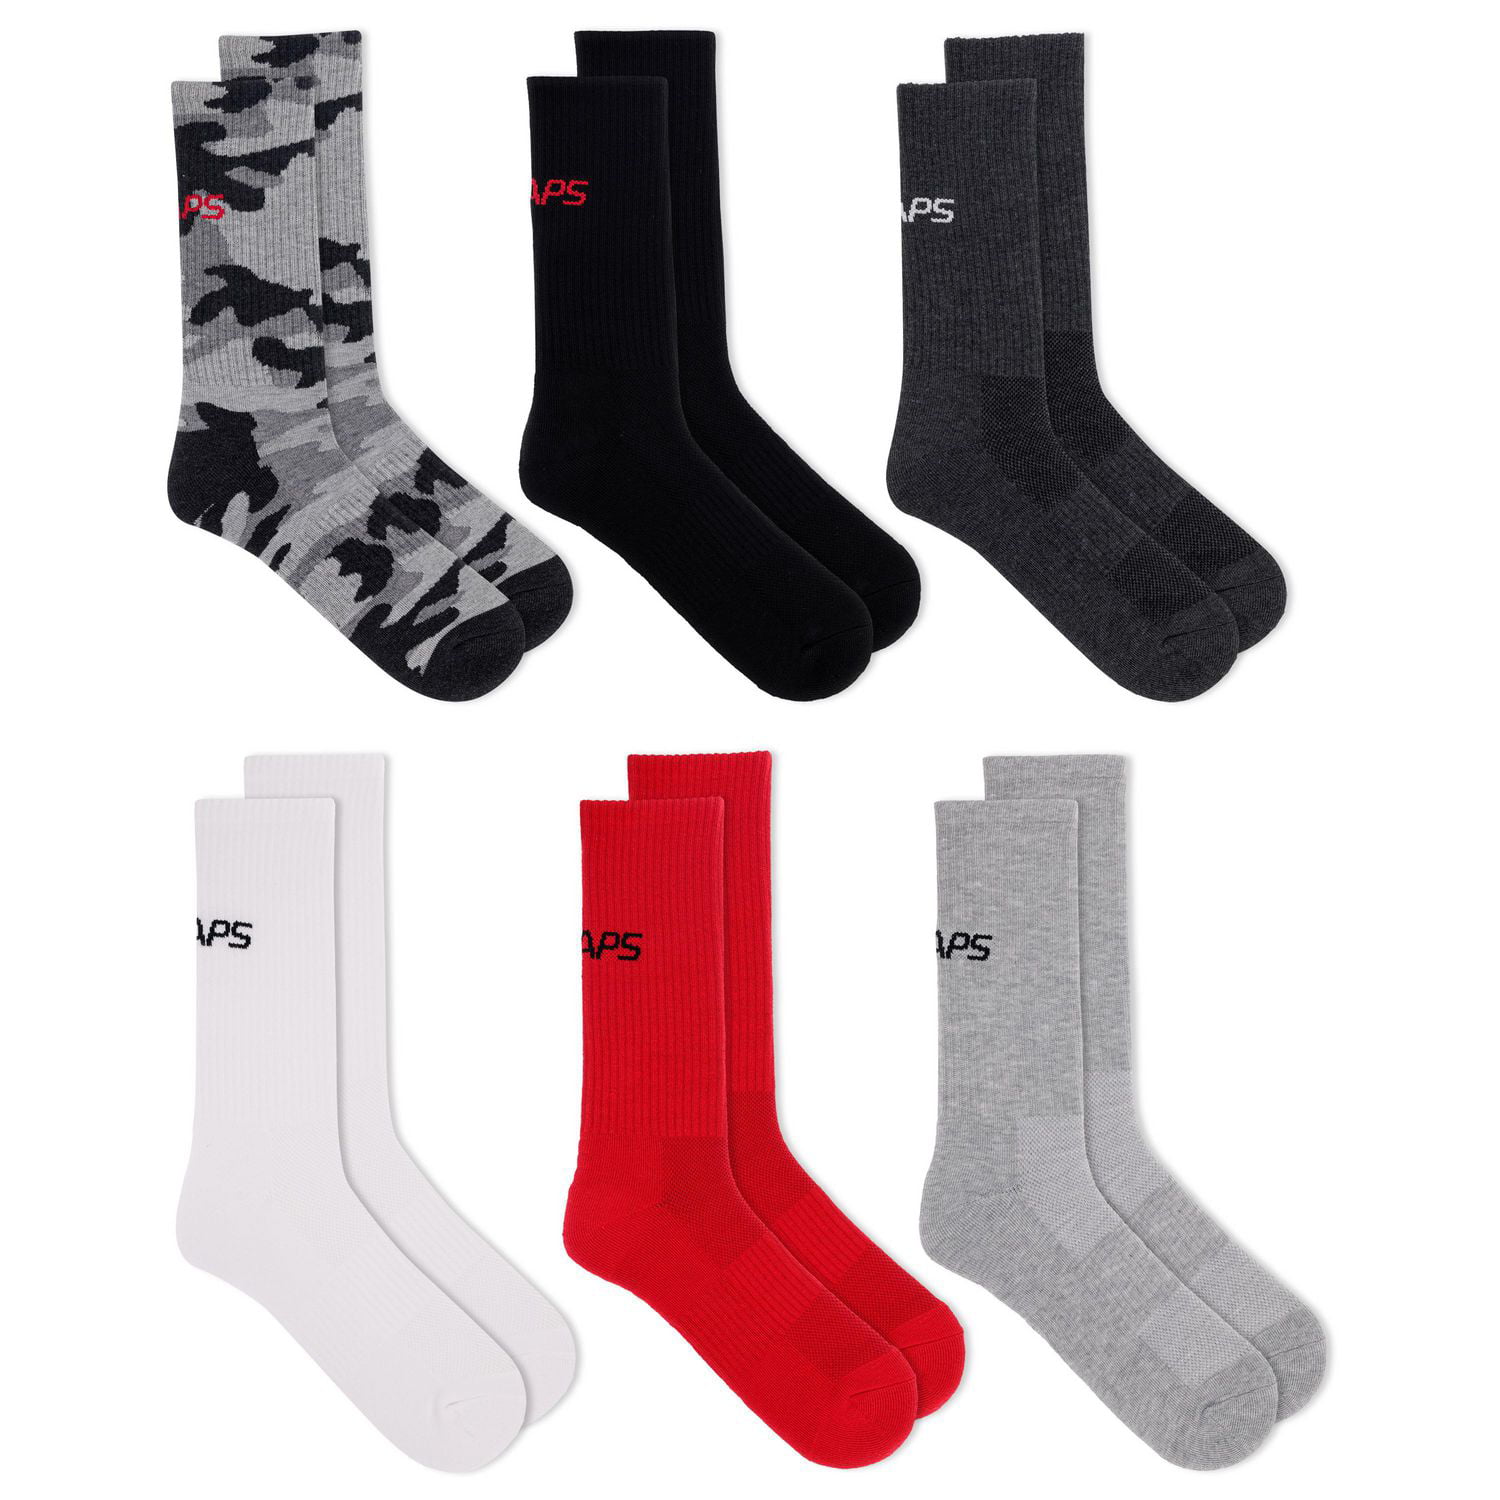 Black & Decker - Men's low cut socks, 8 pairs. Colour: black. Size